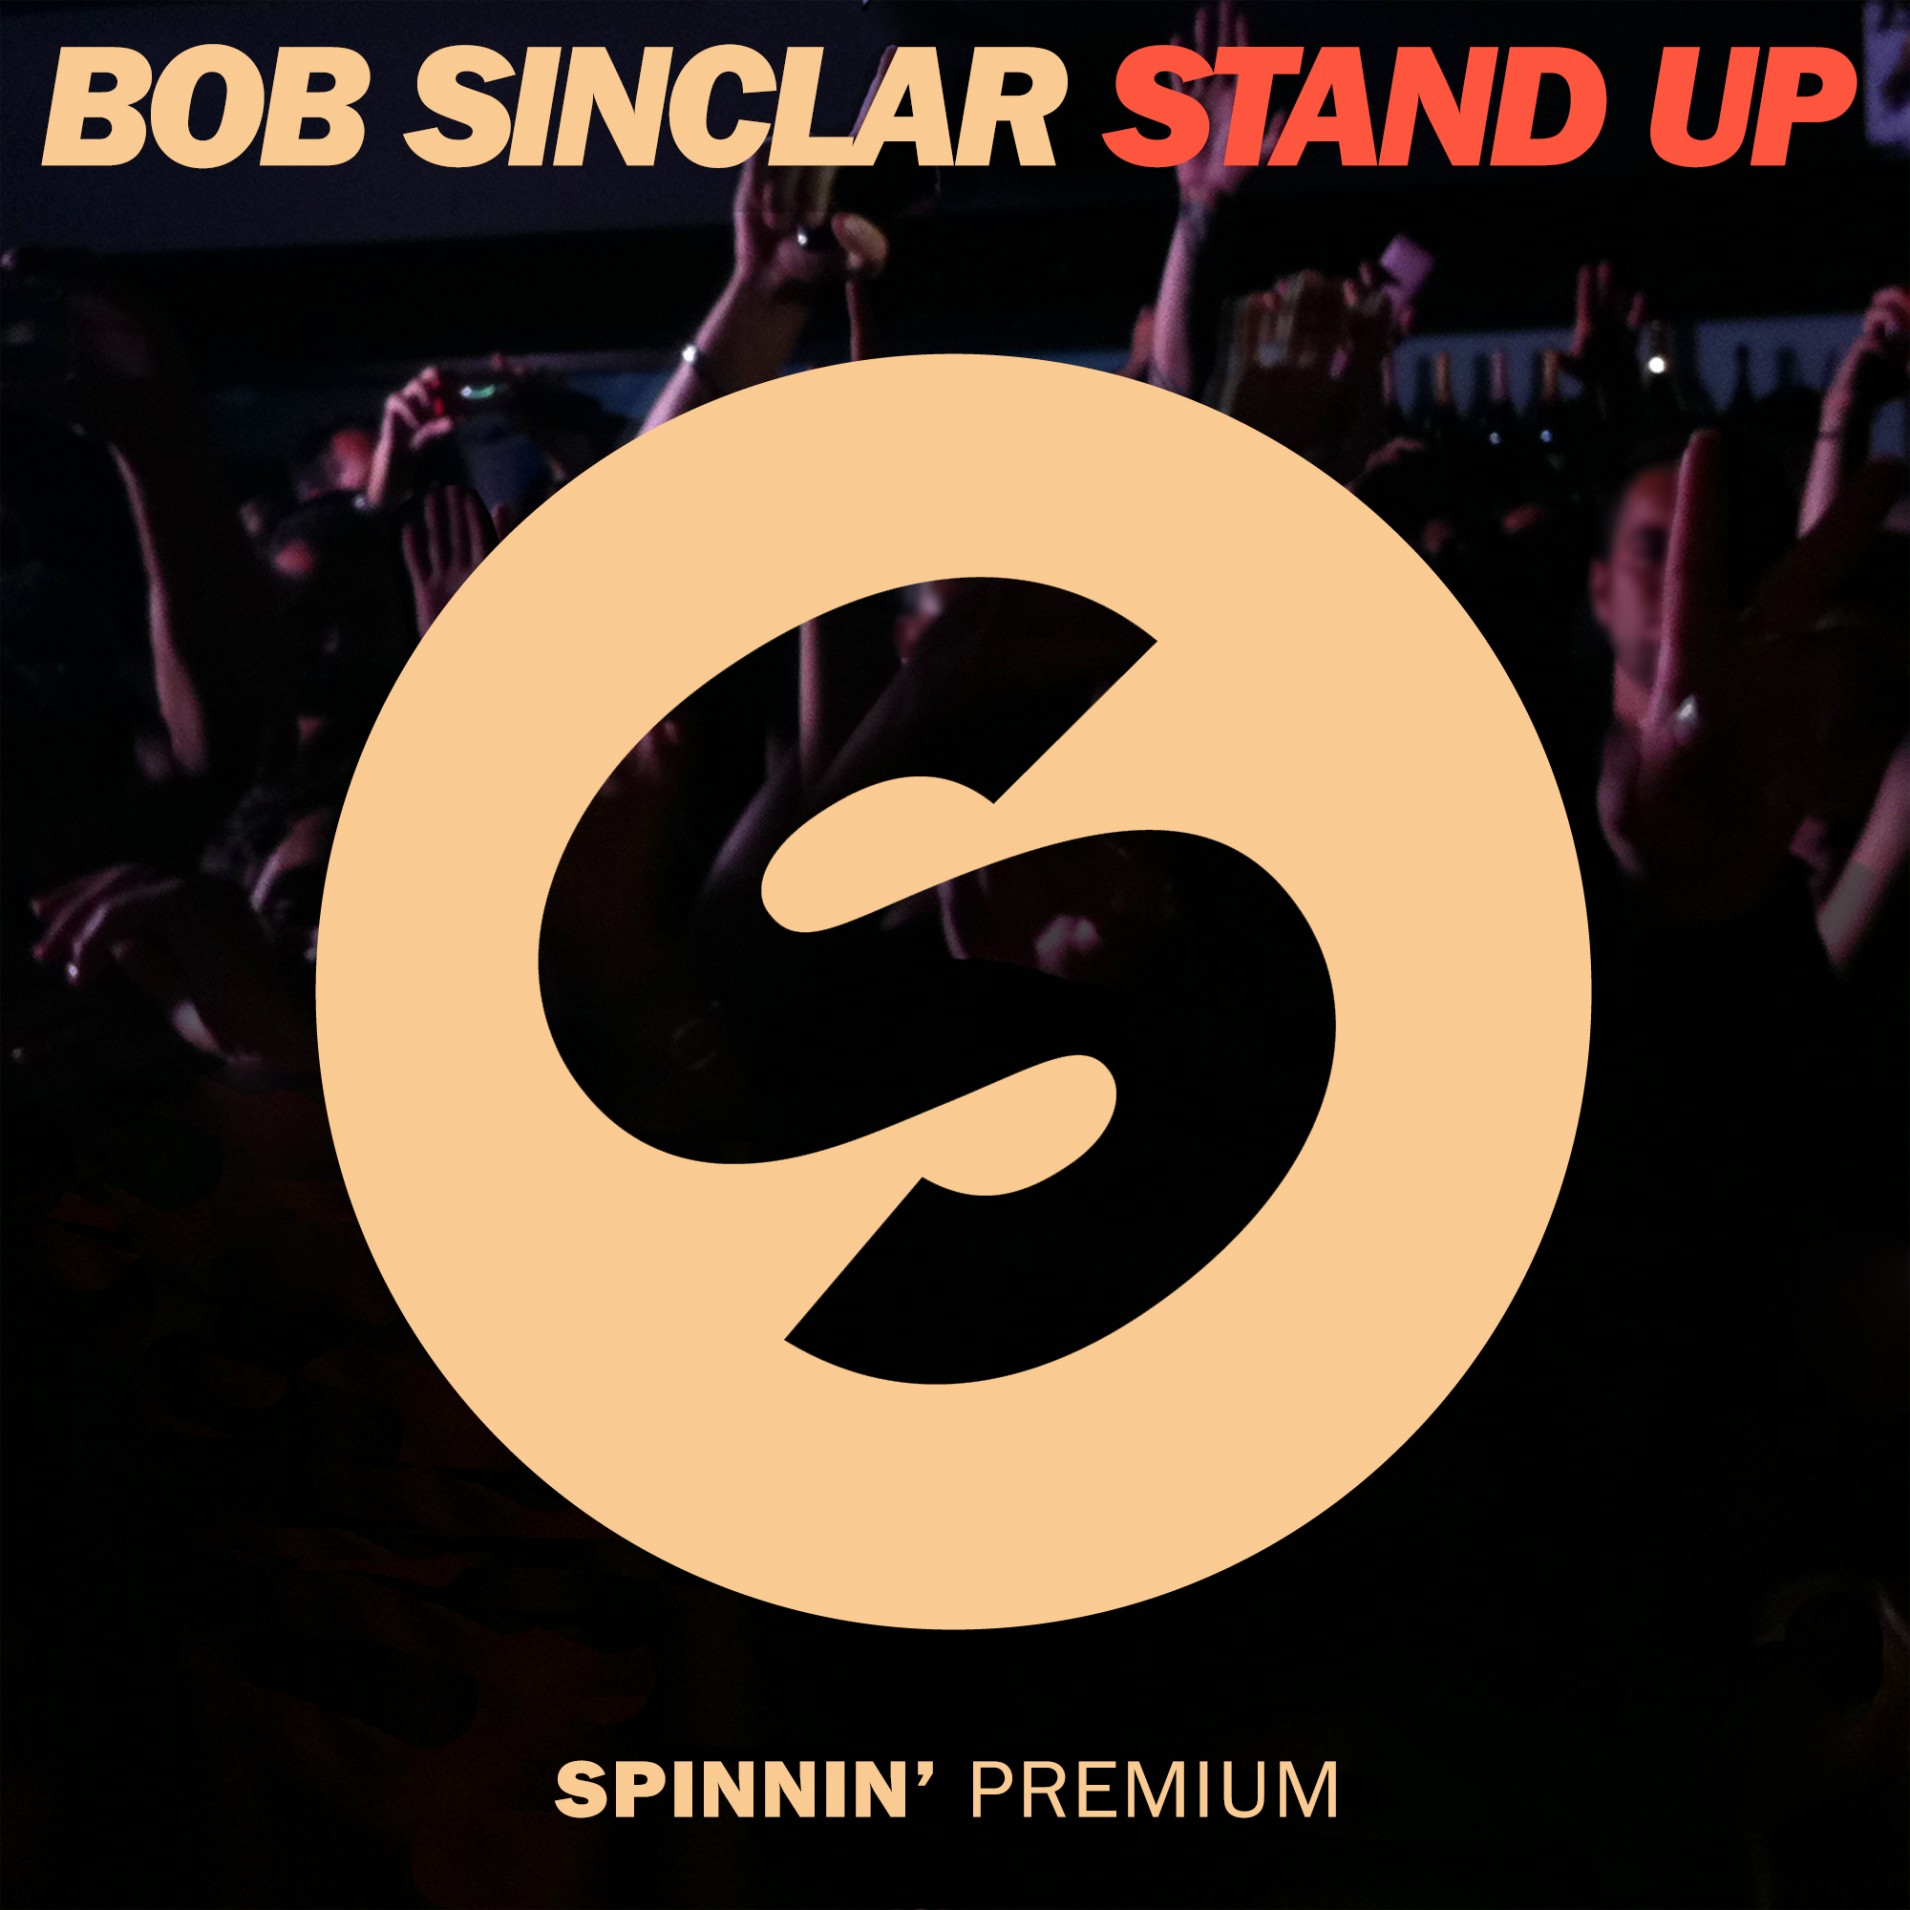 Résultat de recherche d'images pour "bob sinclar stand up"